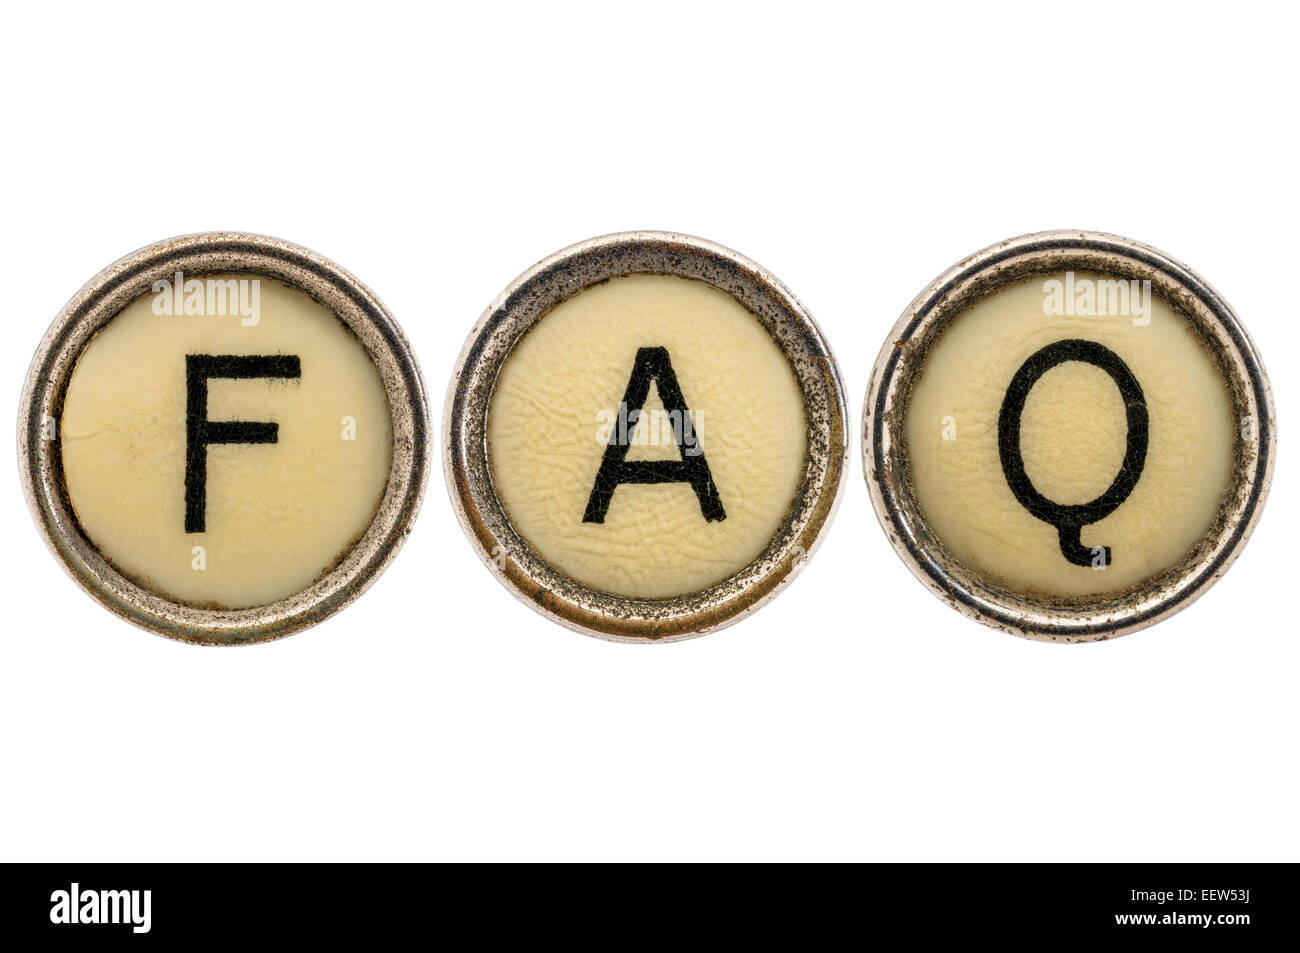 FAQ - Preguntas frecuentes siglas en ronda antiguas teclas de máquina de escribir aislado en blanco Foto de stock